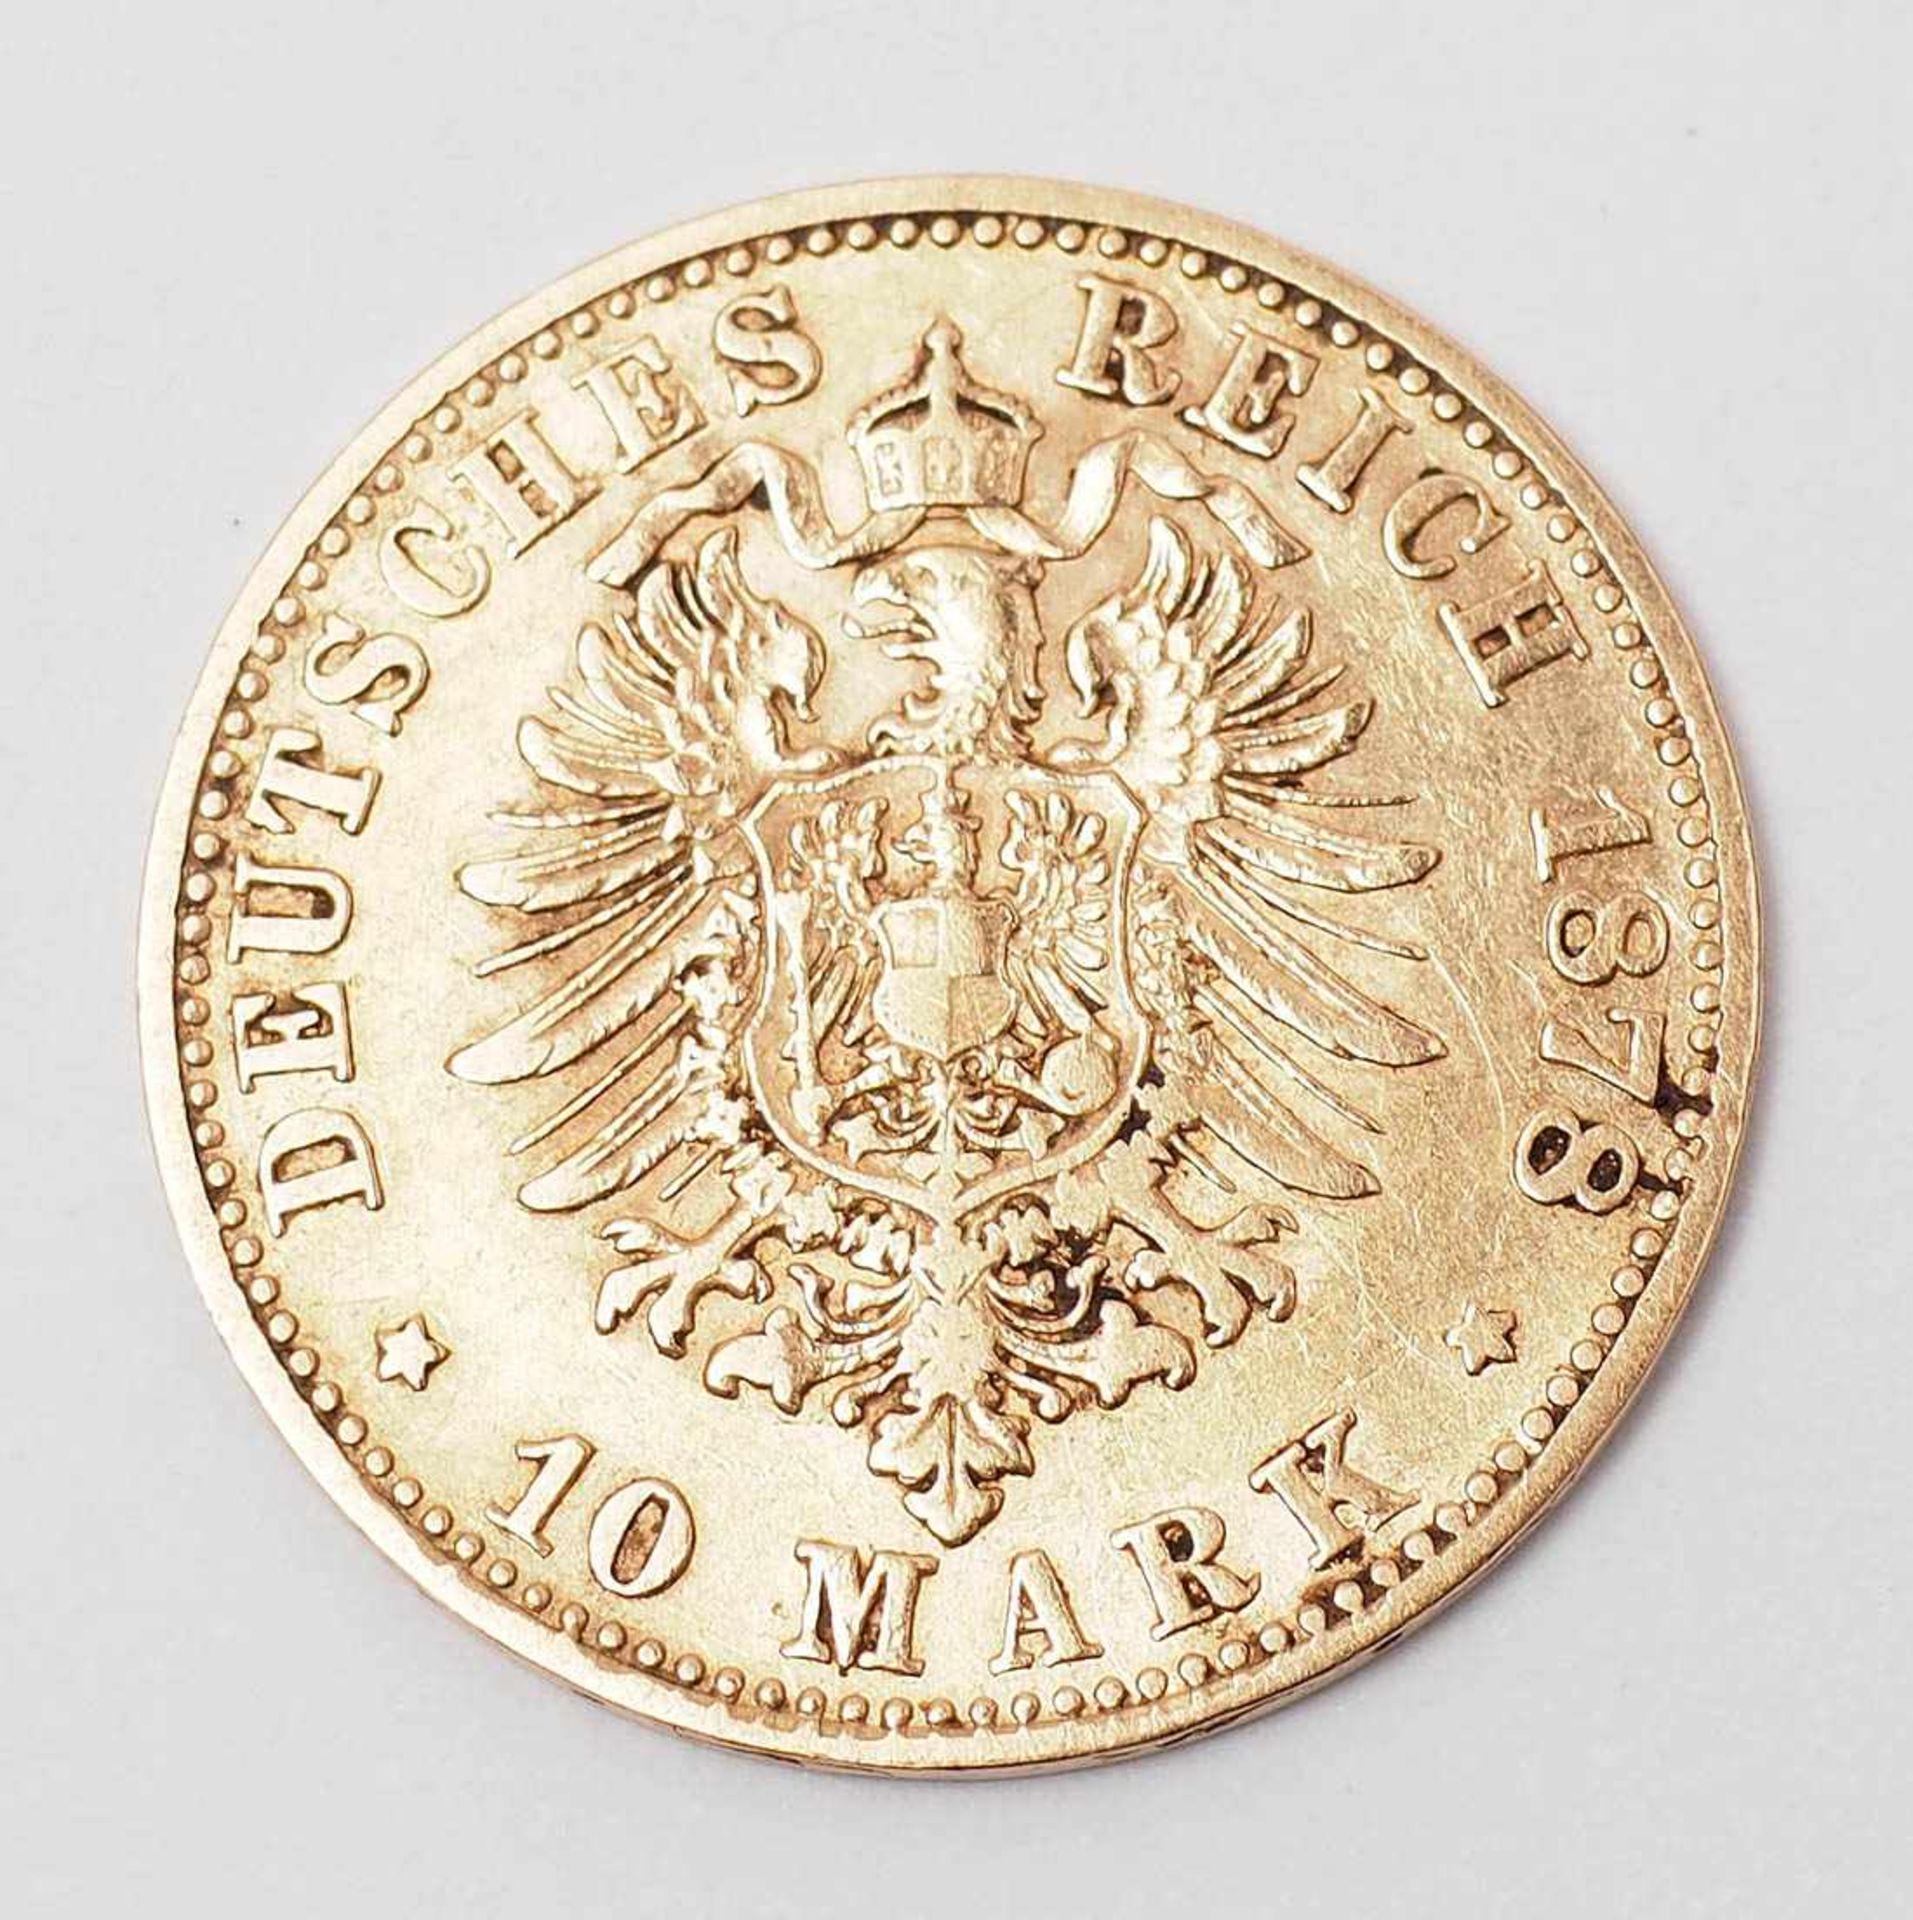 10 Mark-Goldmünze, Sachsen 1878 Münzstätte E. Gew. ca. 4g. - Bild 2 aus 2